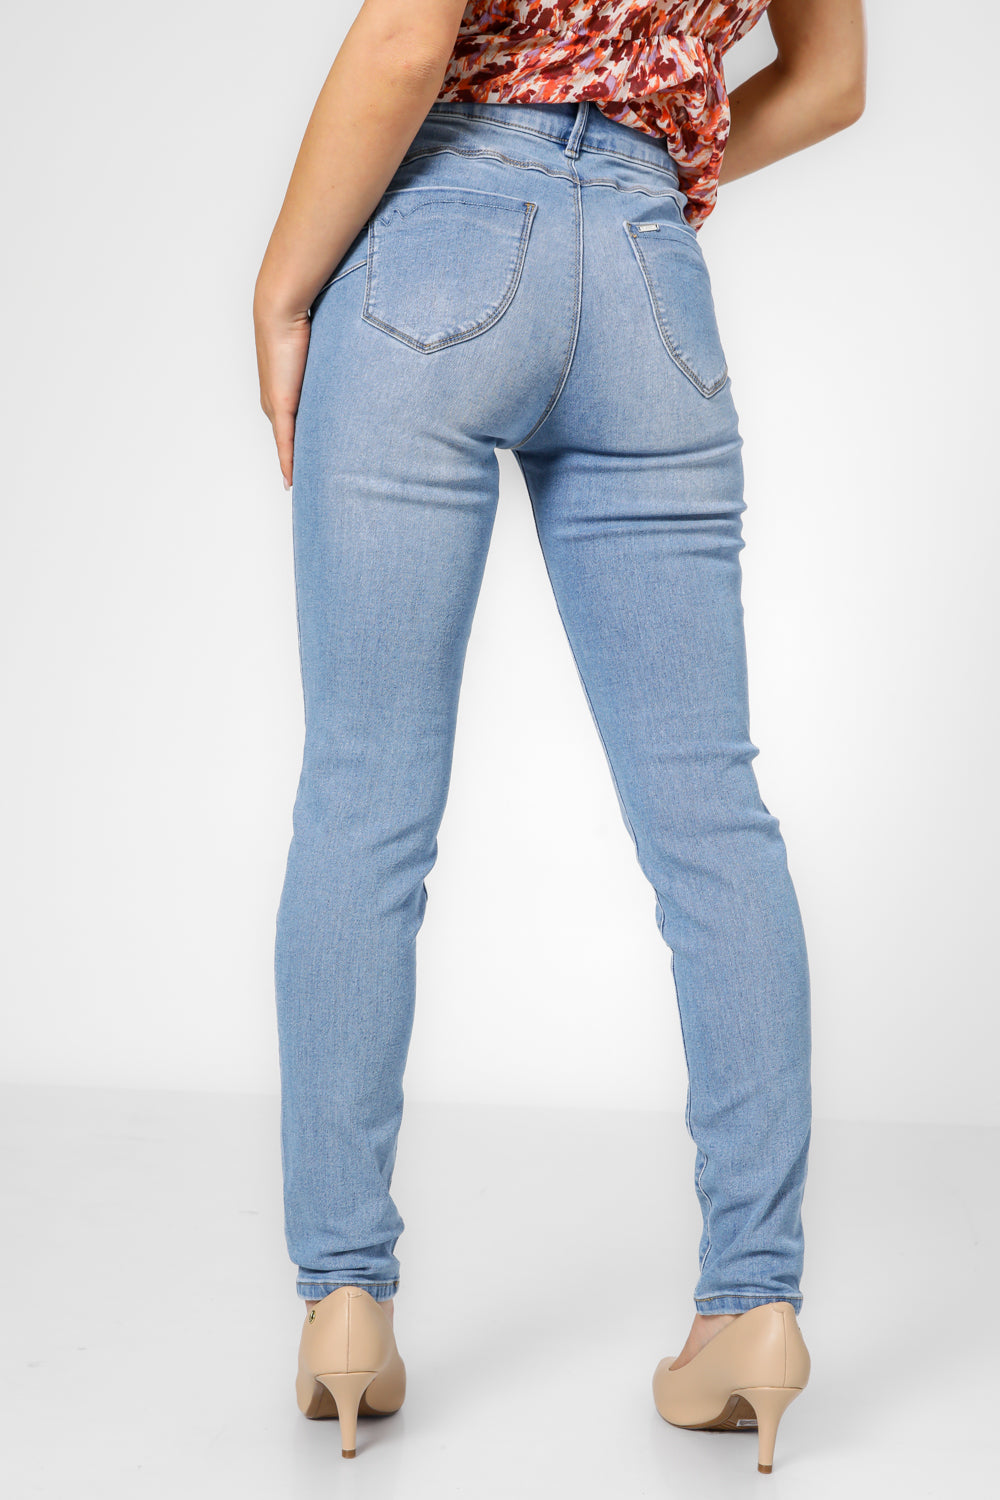 ג'ינס בגזרה צמודה בצבע כחול בהיר